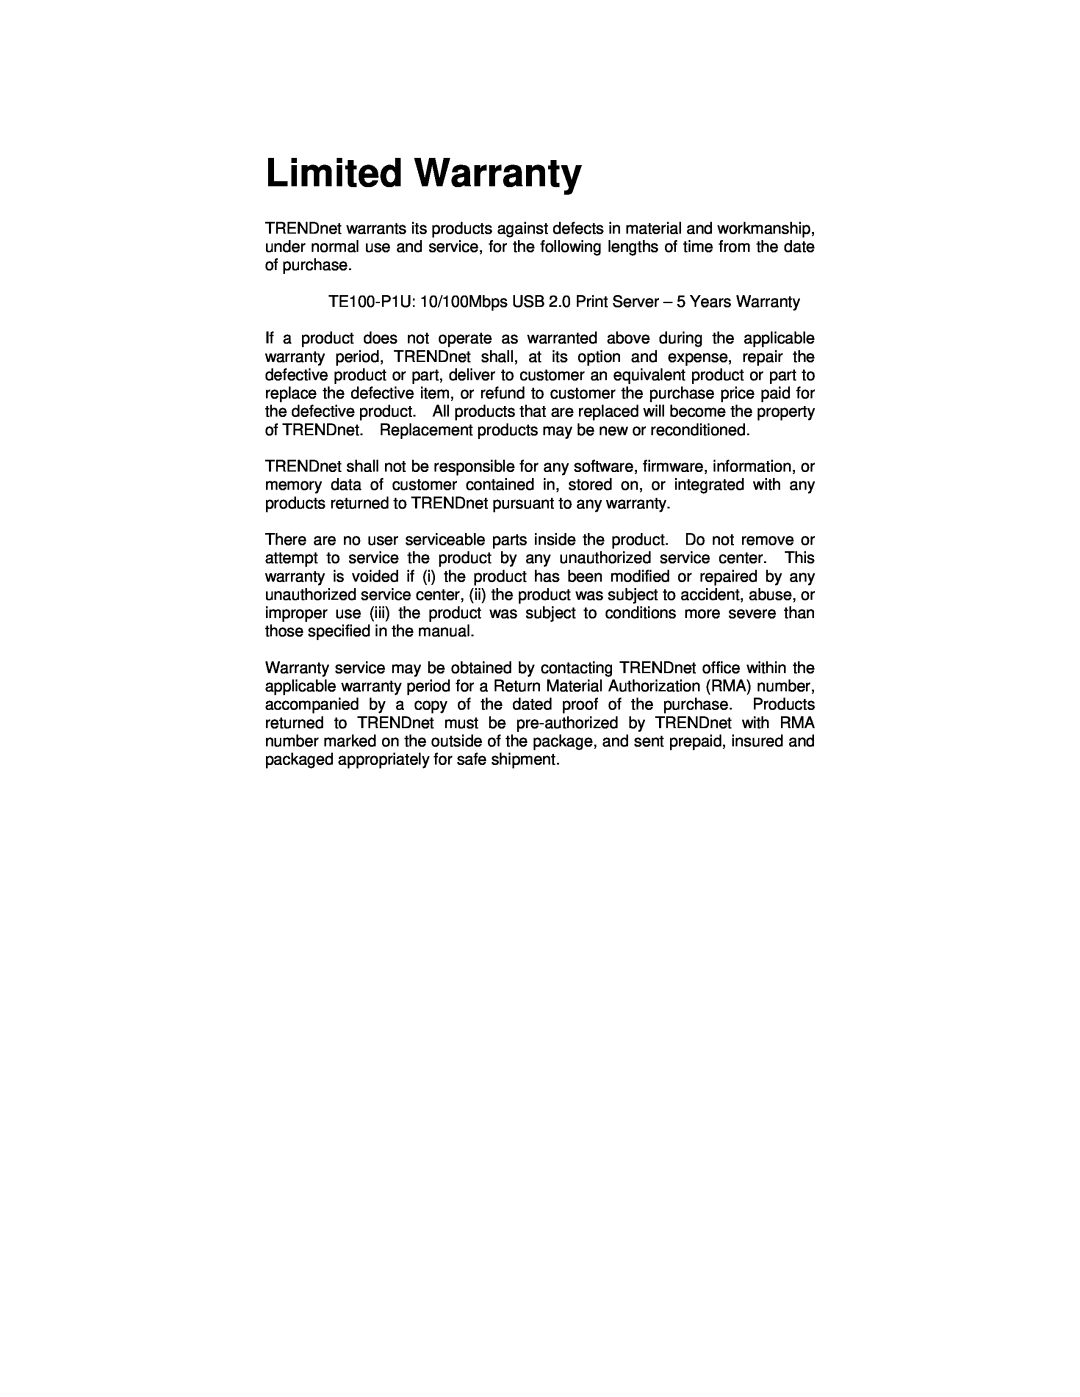 TRENDnet TE100-P1U manual Limited Warranty 